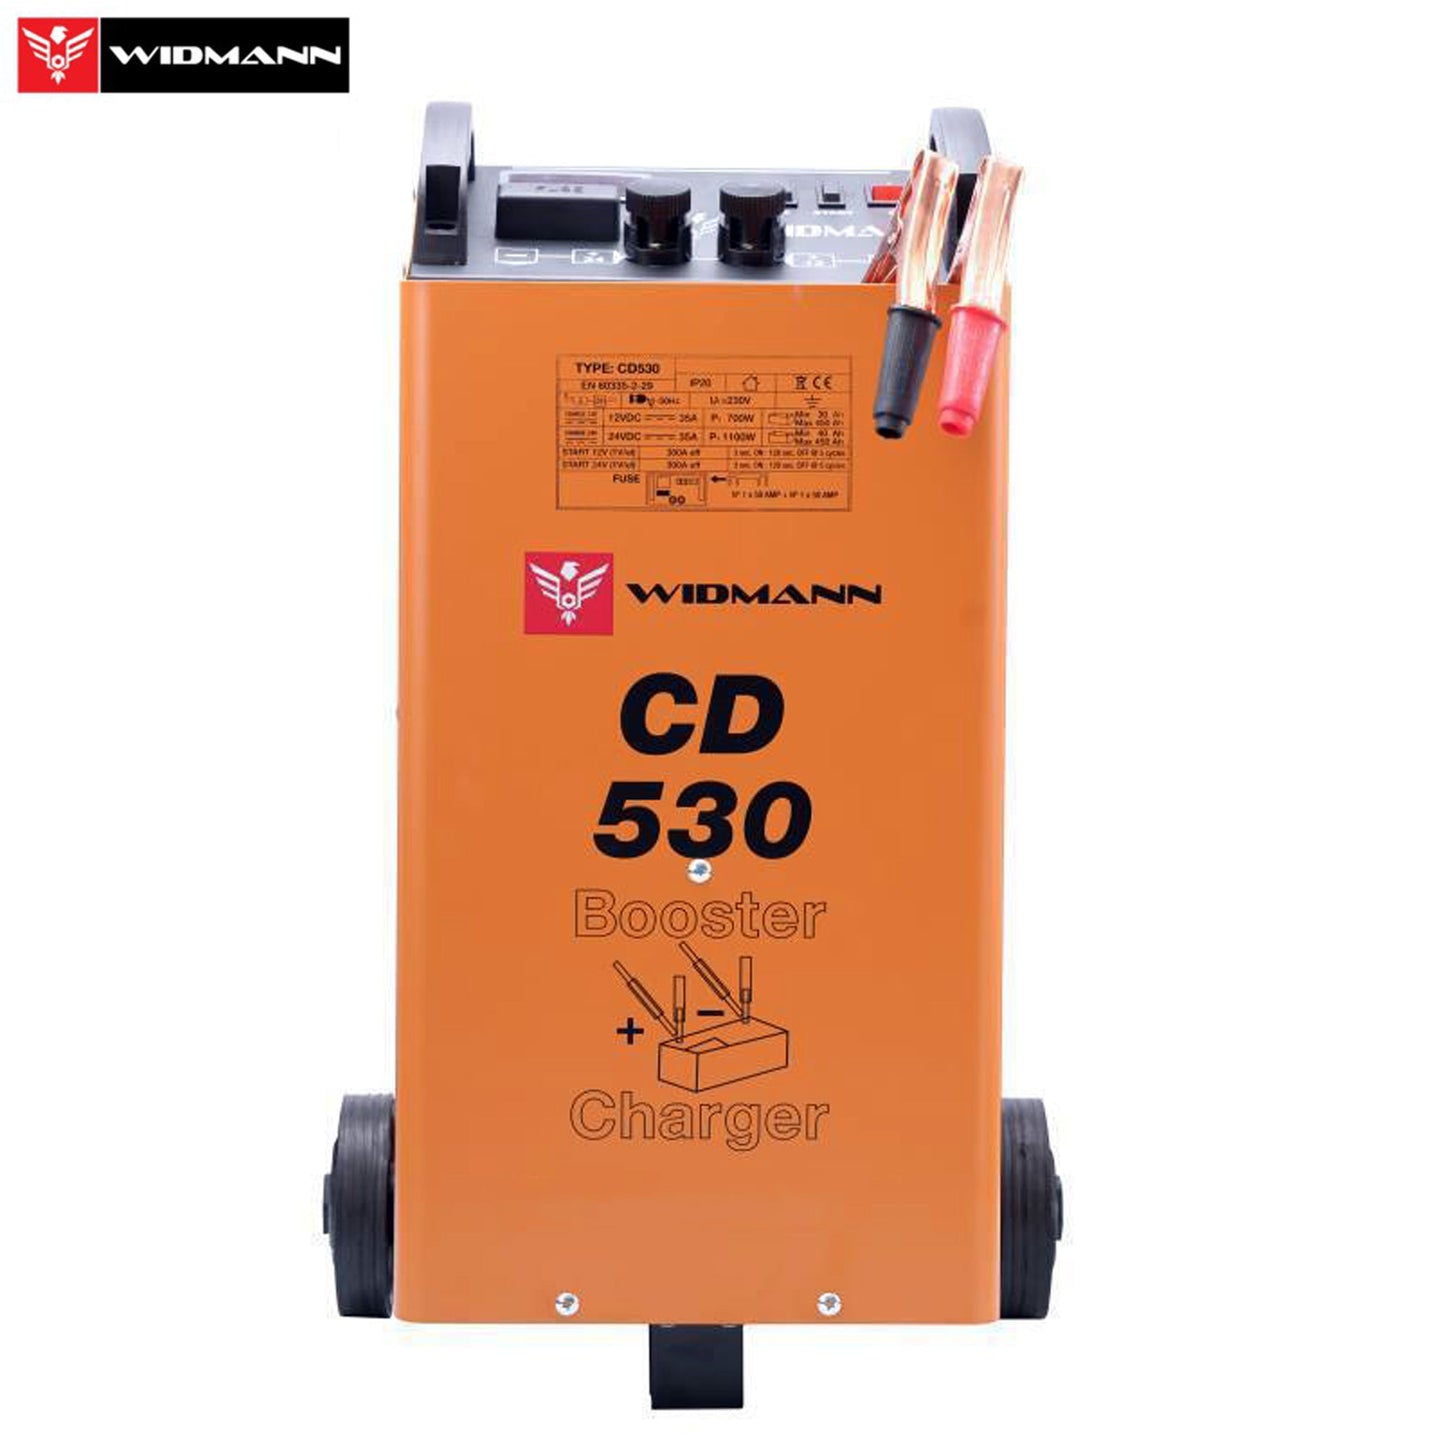 Widmann CD-530: 12V/24V acculader en startbooster - Bivakshop